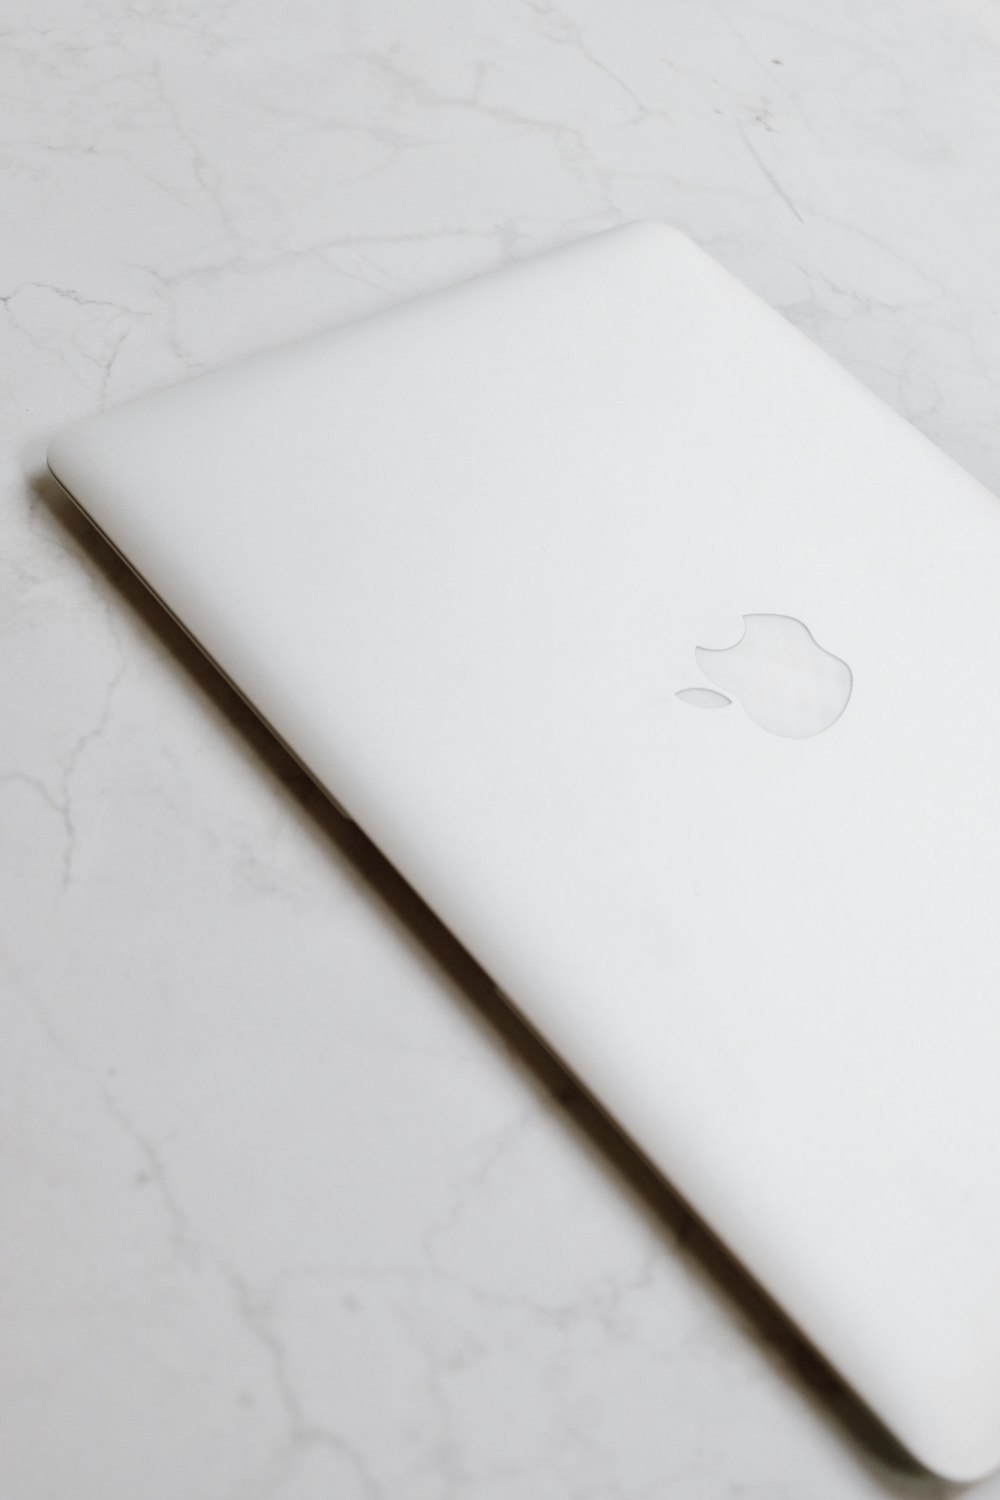 white macbook on white textile